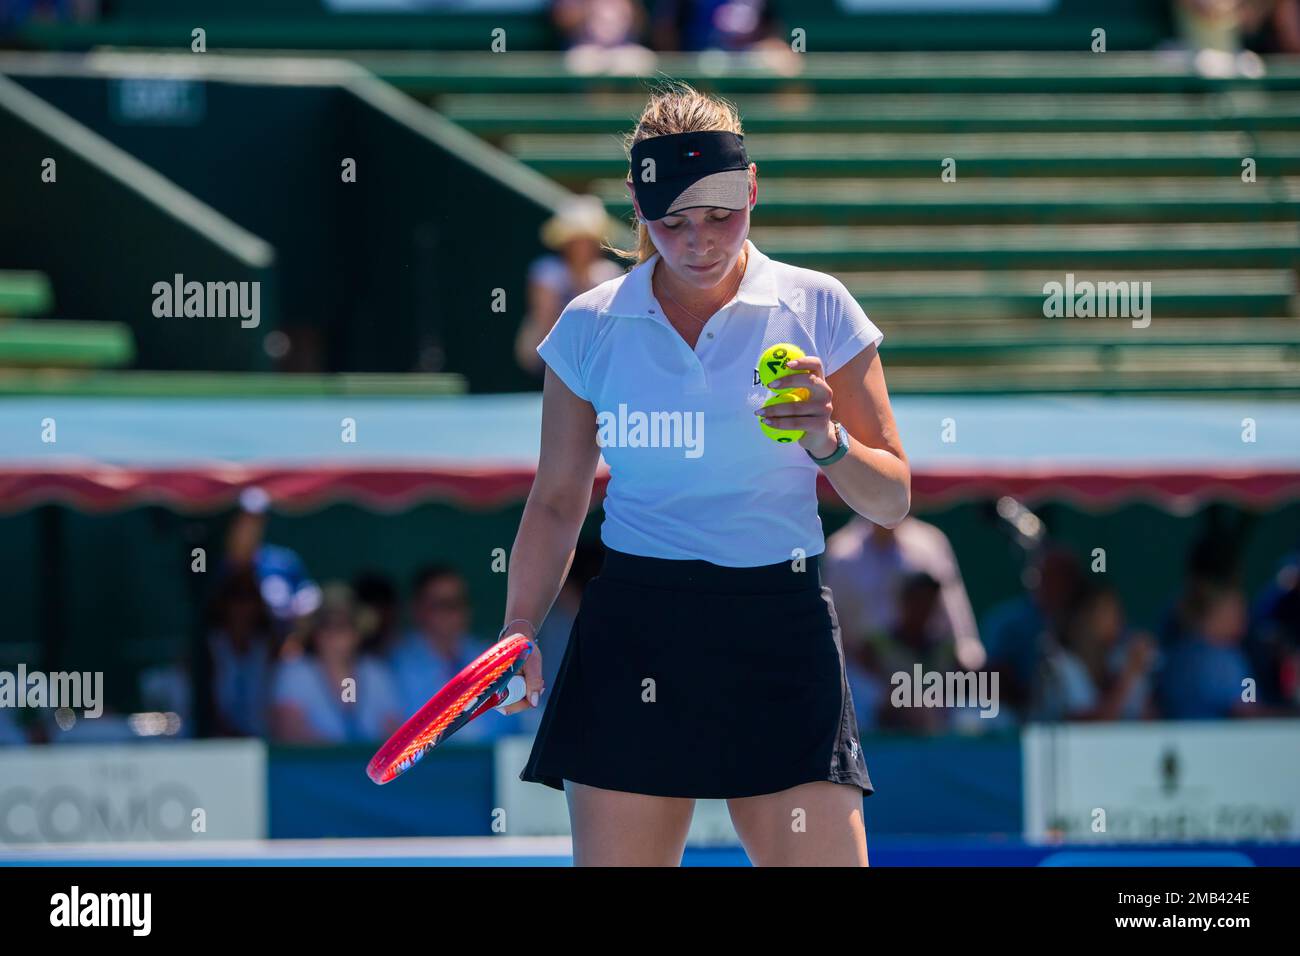 Donna Vekic de Croatie en action pendant le jour 2 du tournoi de tennis classique de Kooyong dernier match contre Kimberly Birrell de l'Australie au club de tennis de Kooyong Lawn. Vekic a gagné en trois séries 2:6, 6:2, 10:8. Banque D'Images